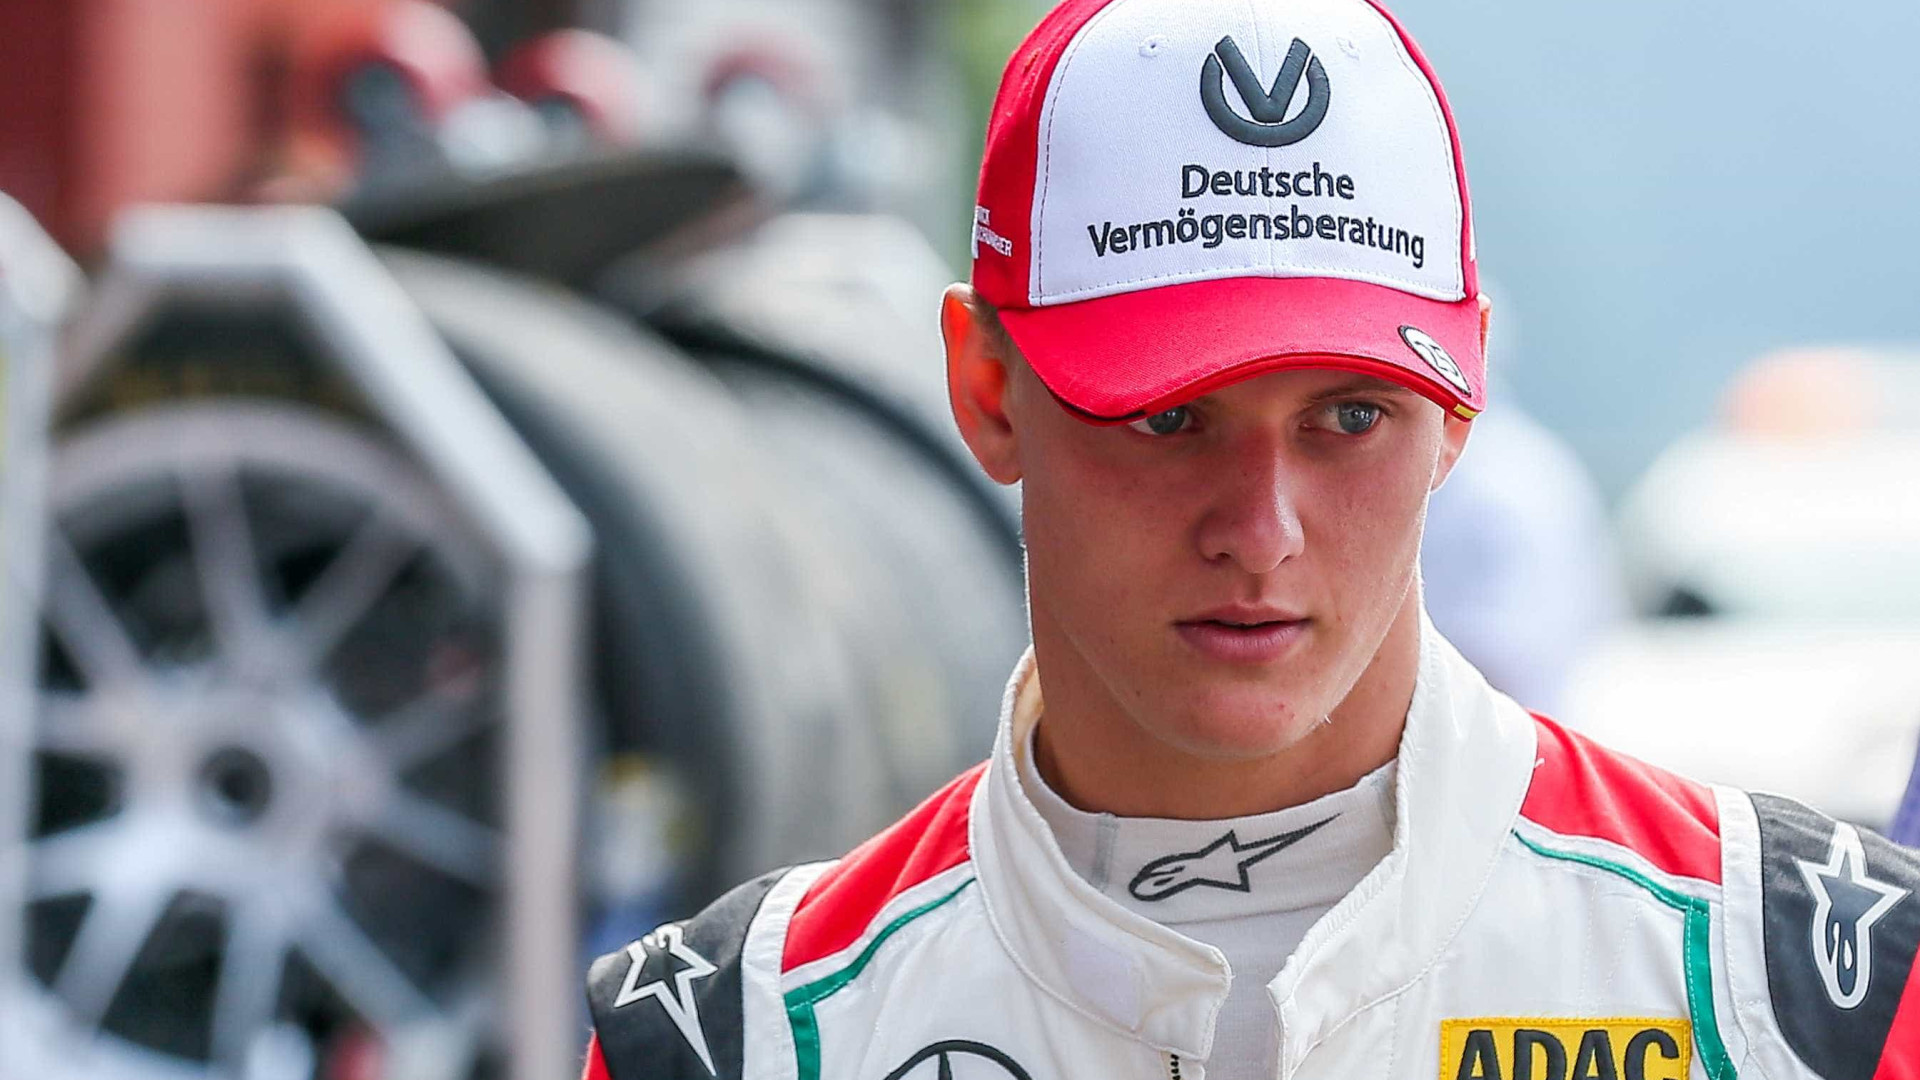 Filho de Schumacher supera Vettel mas título fica com mexicano